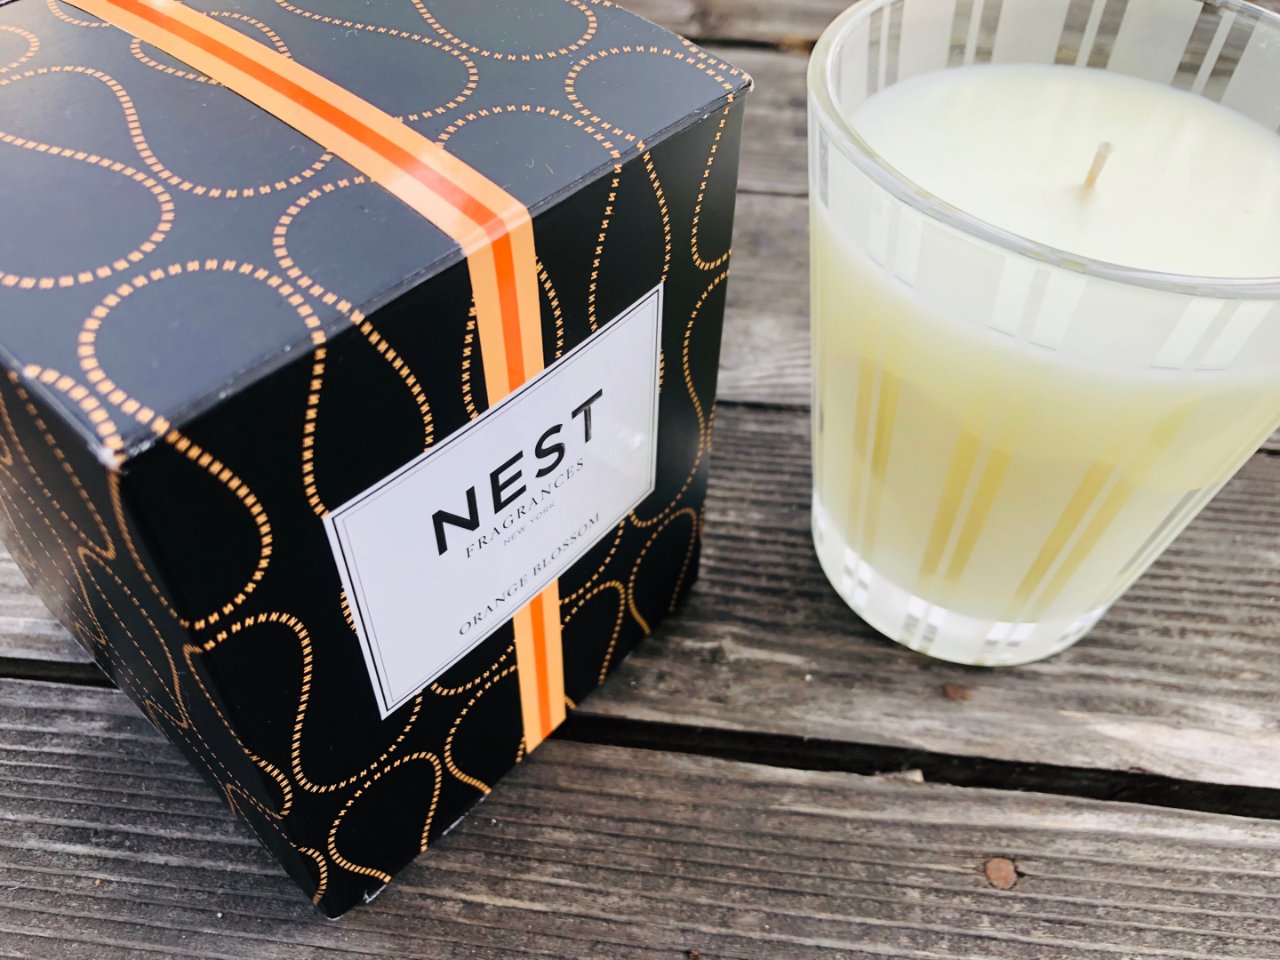 Nest,19.99美元